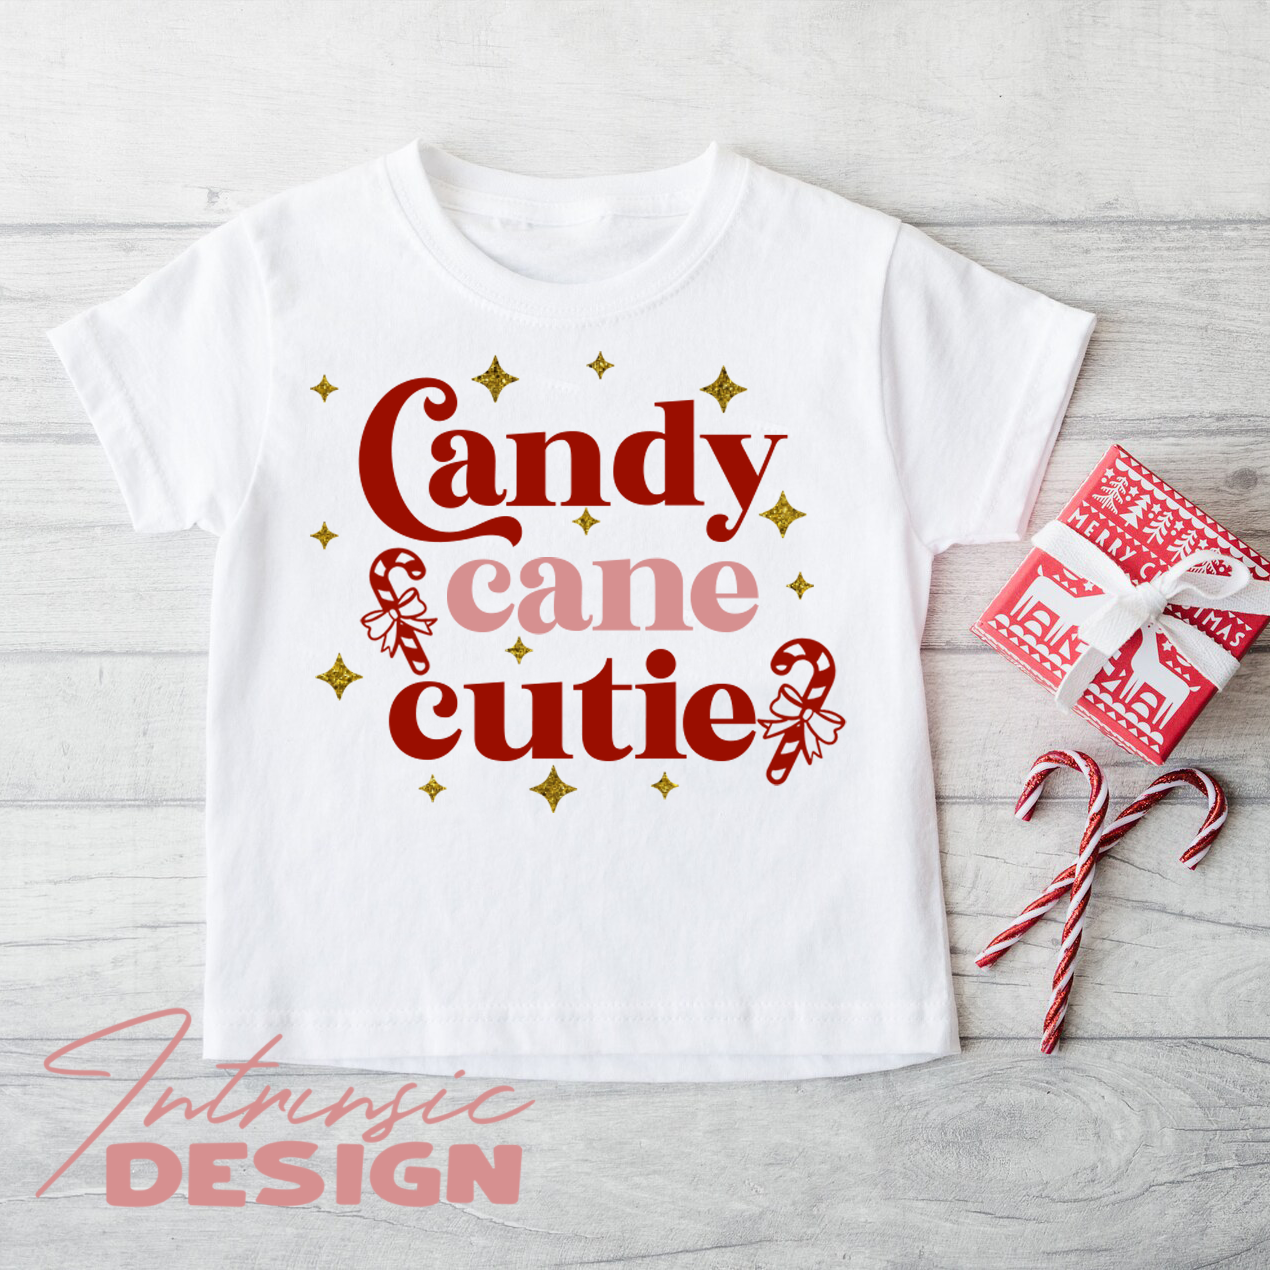 Candy cane cutie